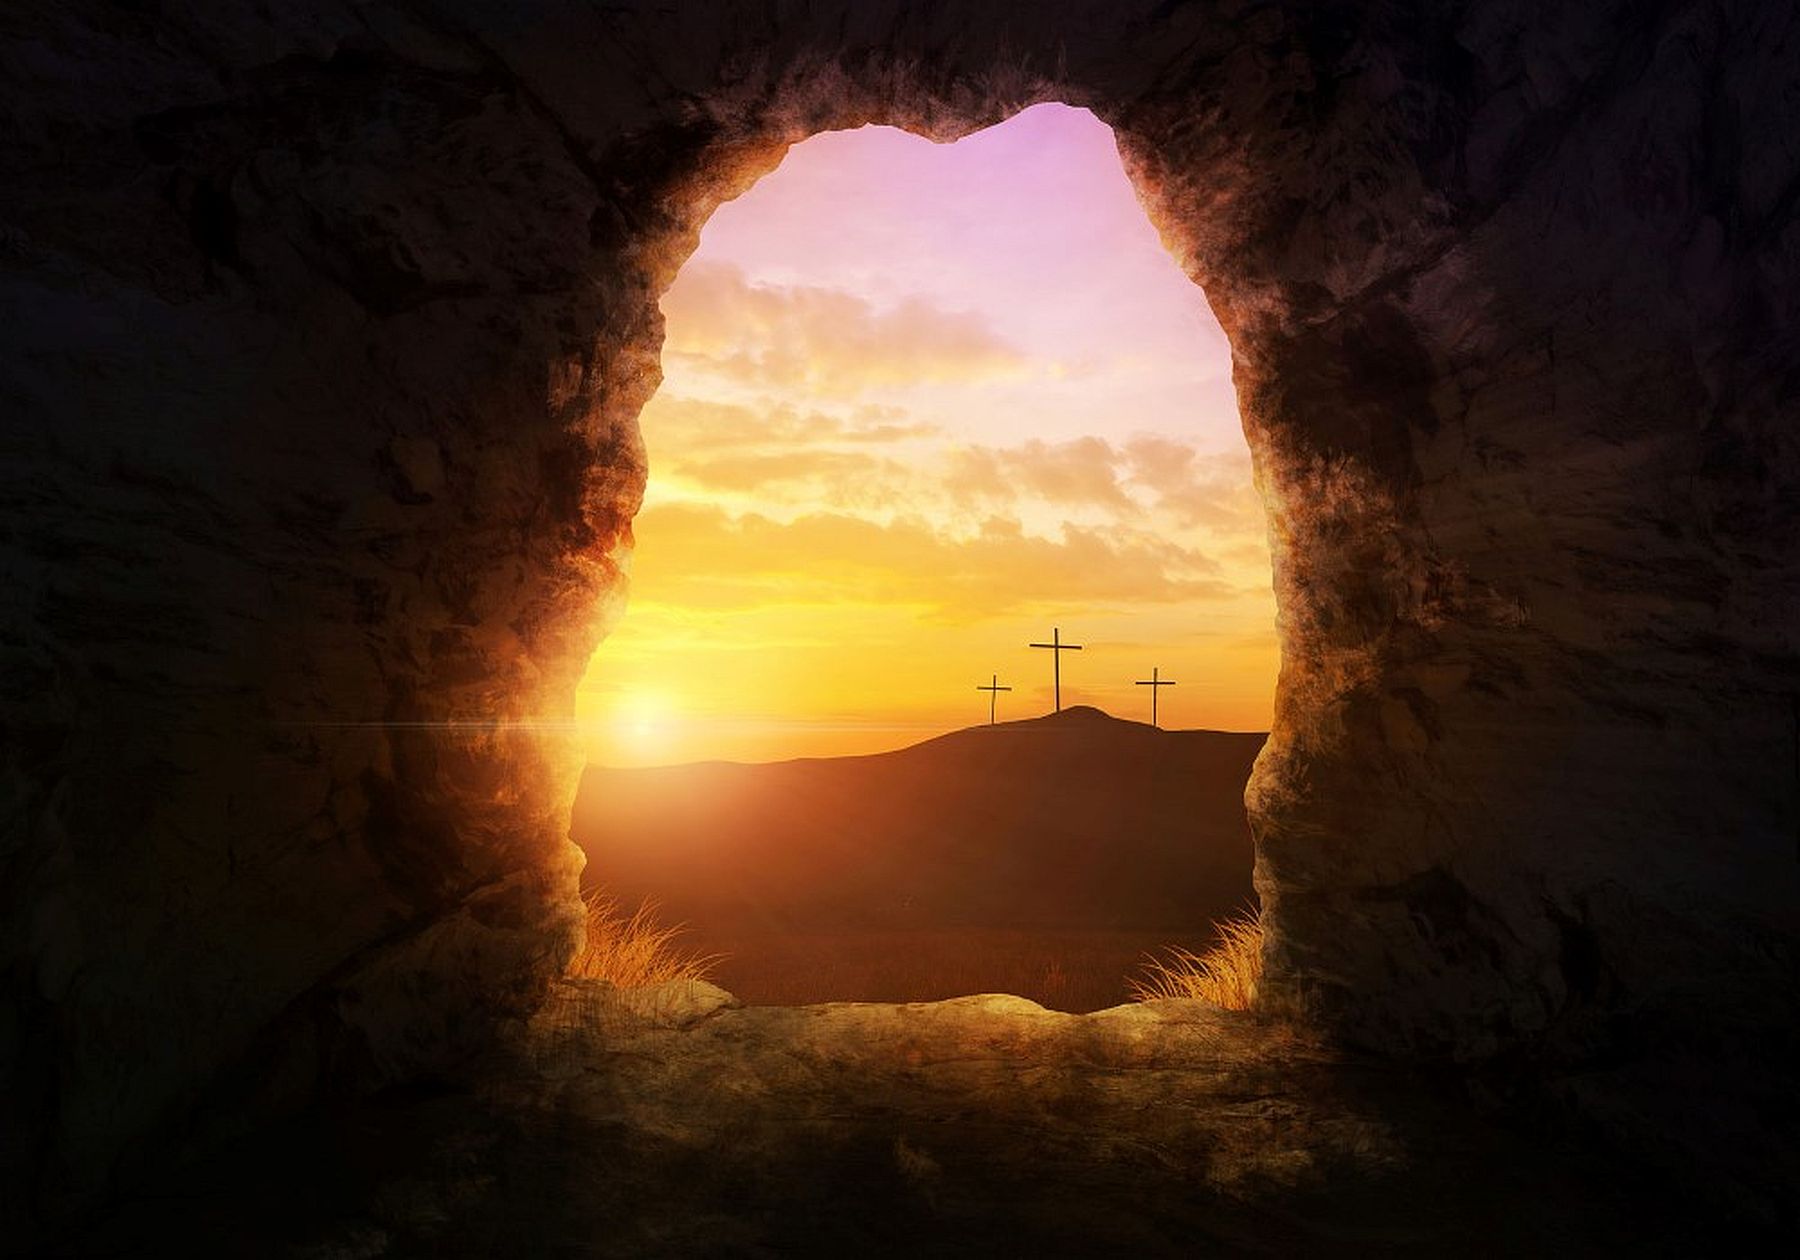 Húsvét vigíliája - nagyszombaton véget ér a negyvennapos nagyböjt